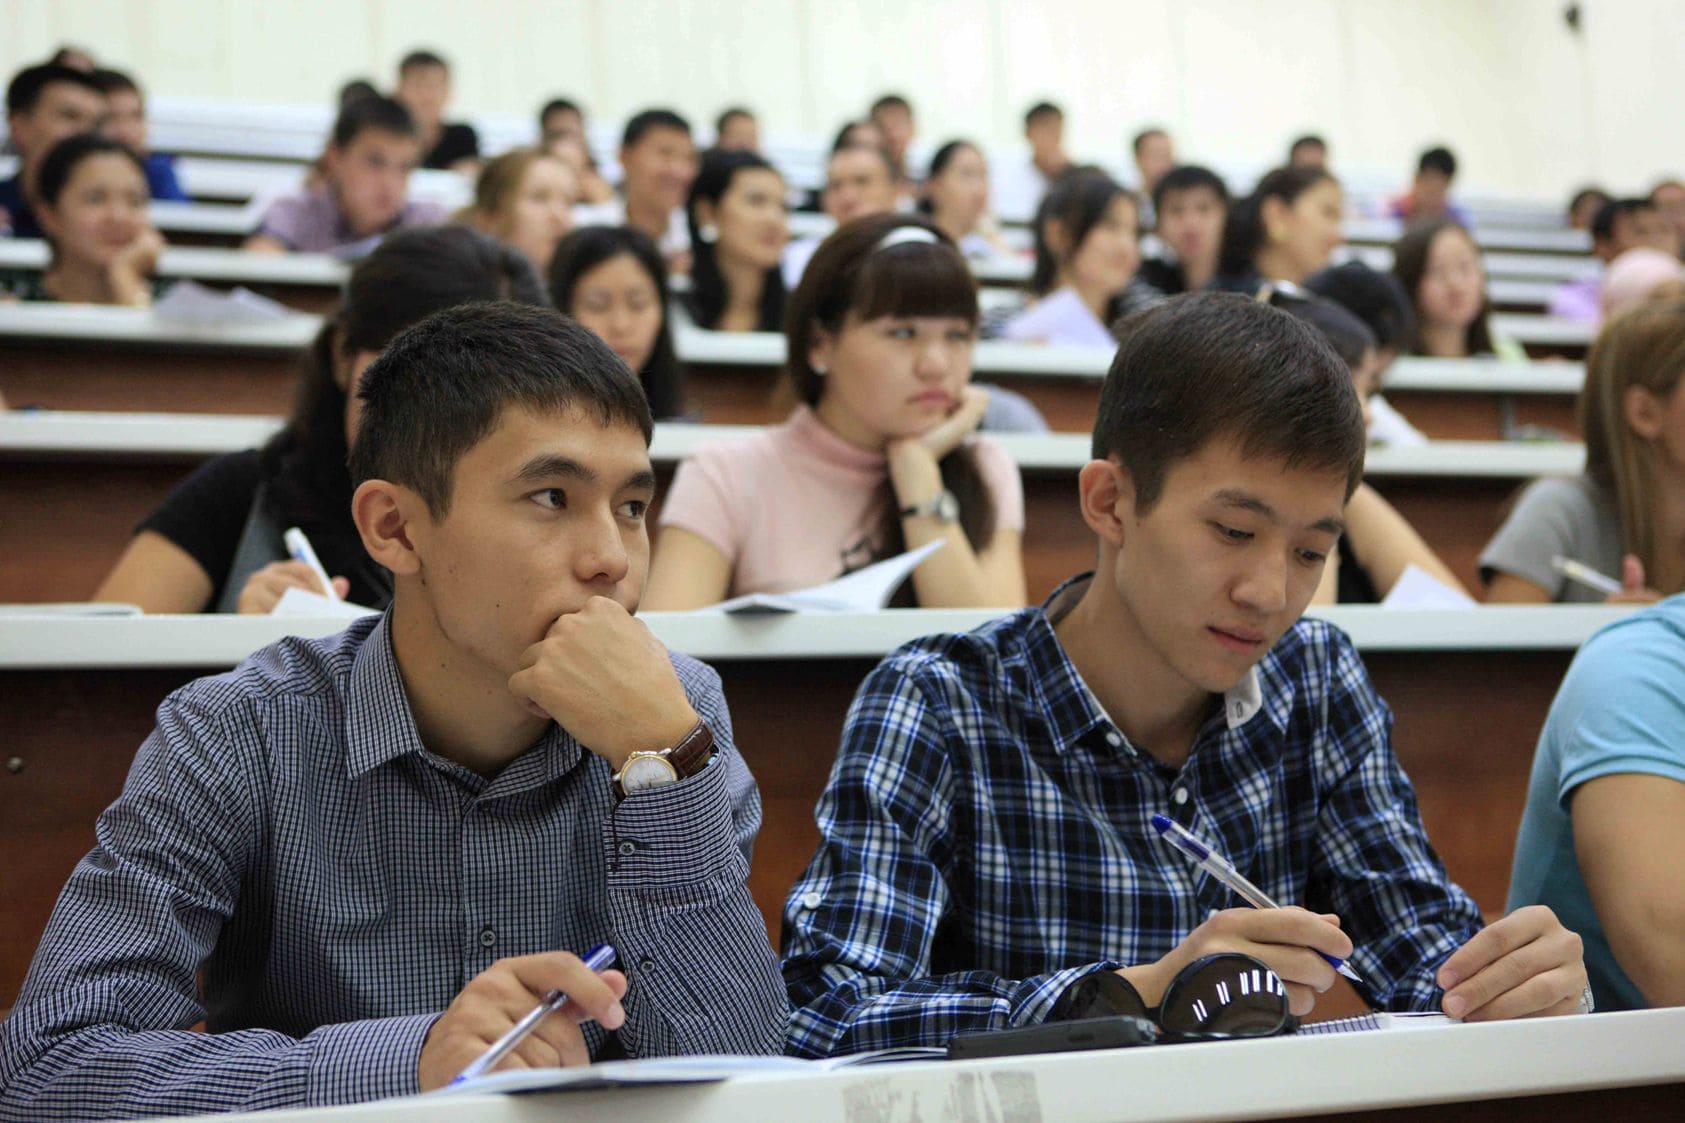 kak kazahstanskim studentam proshche popast v rossiyu